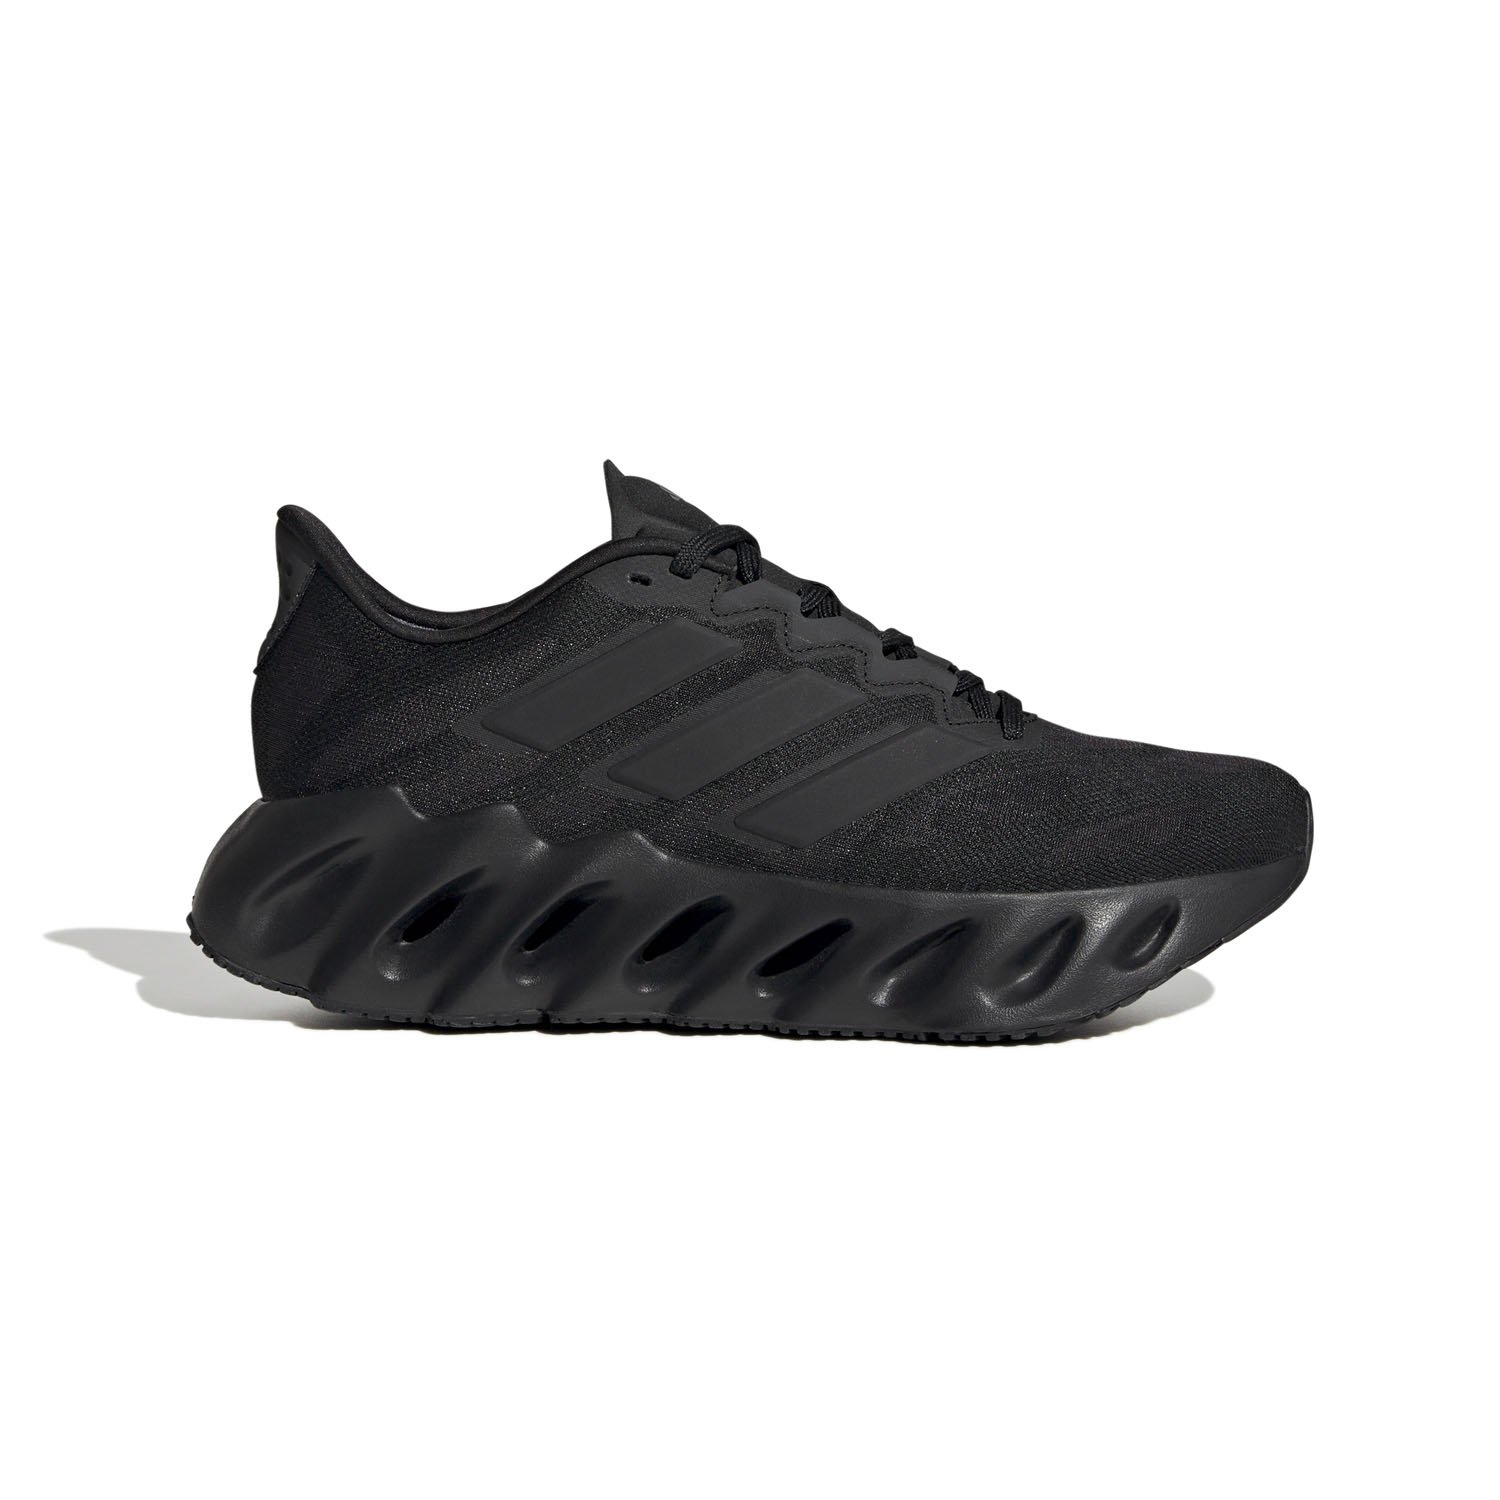 Adidas Switch Kadın Koşu Ayakkabısı - Siyah - 1